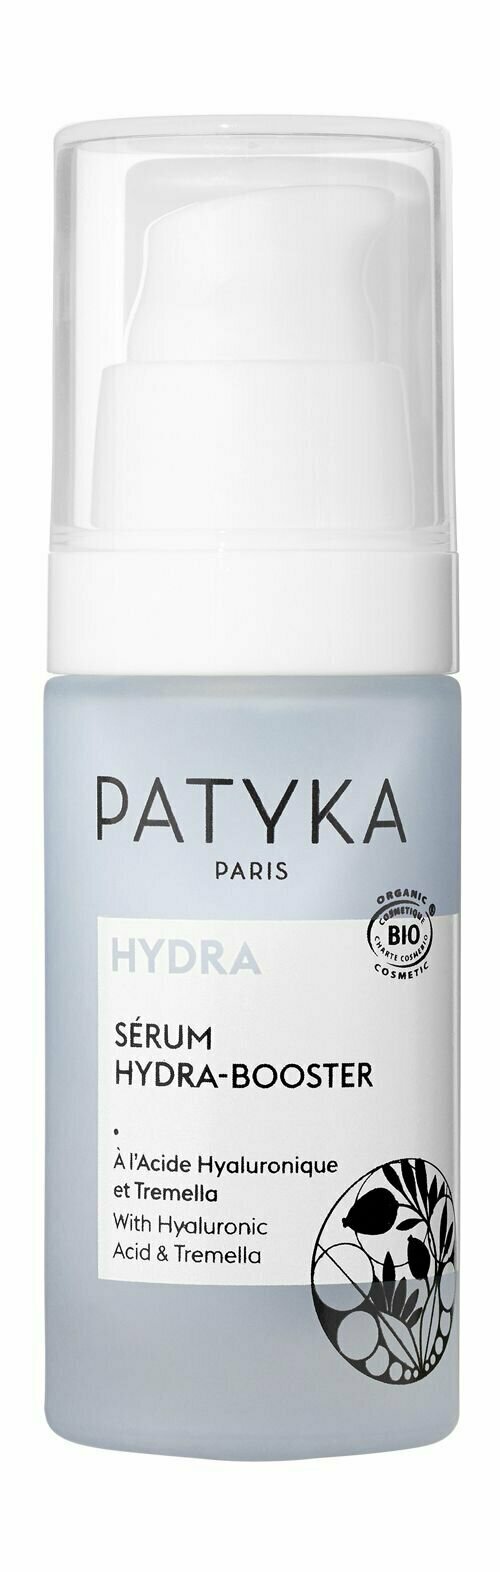 Увлажняющая сыворотка для лица с гиалуроновой кислотой Patyka Hydra Booster Serum